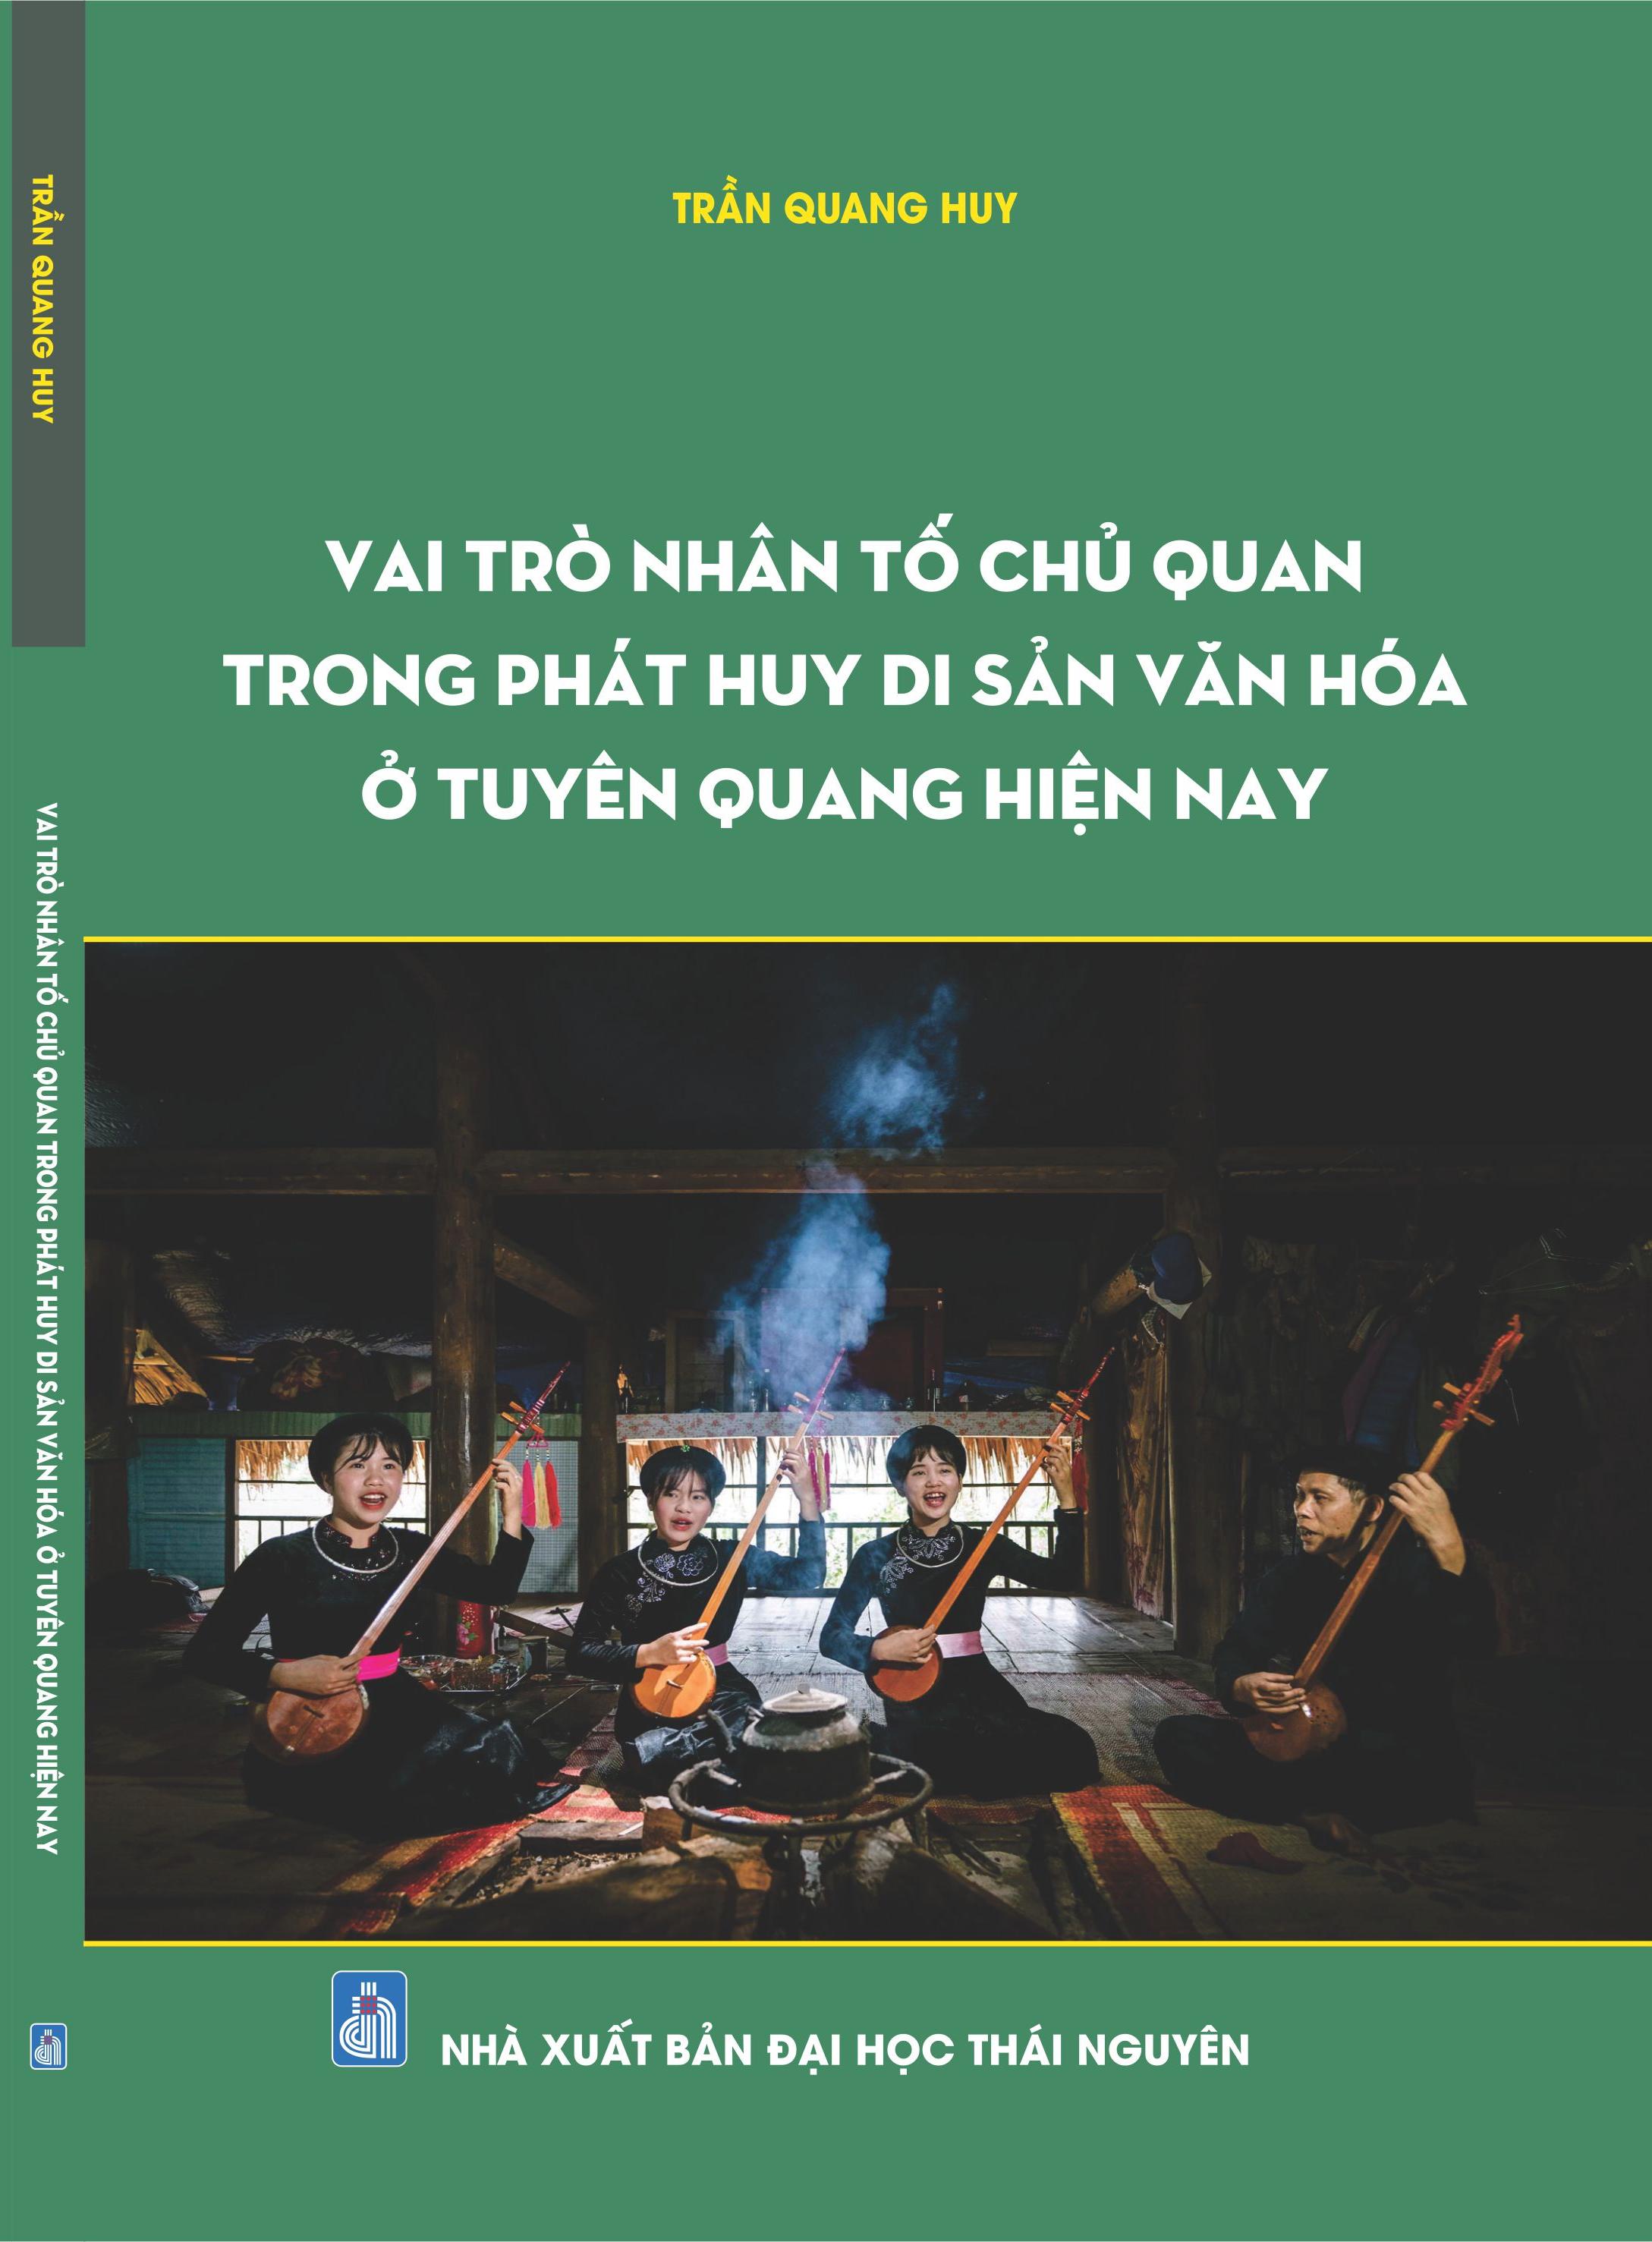 Vai trò nhân tố chủ quan trong phát huy di sản văn hóa ở Tuyên Quang hiện nay